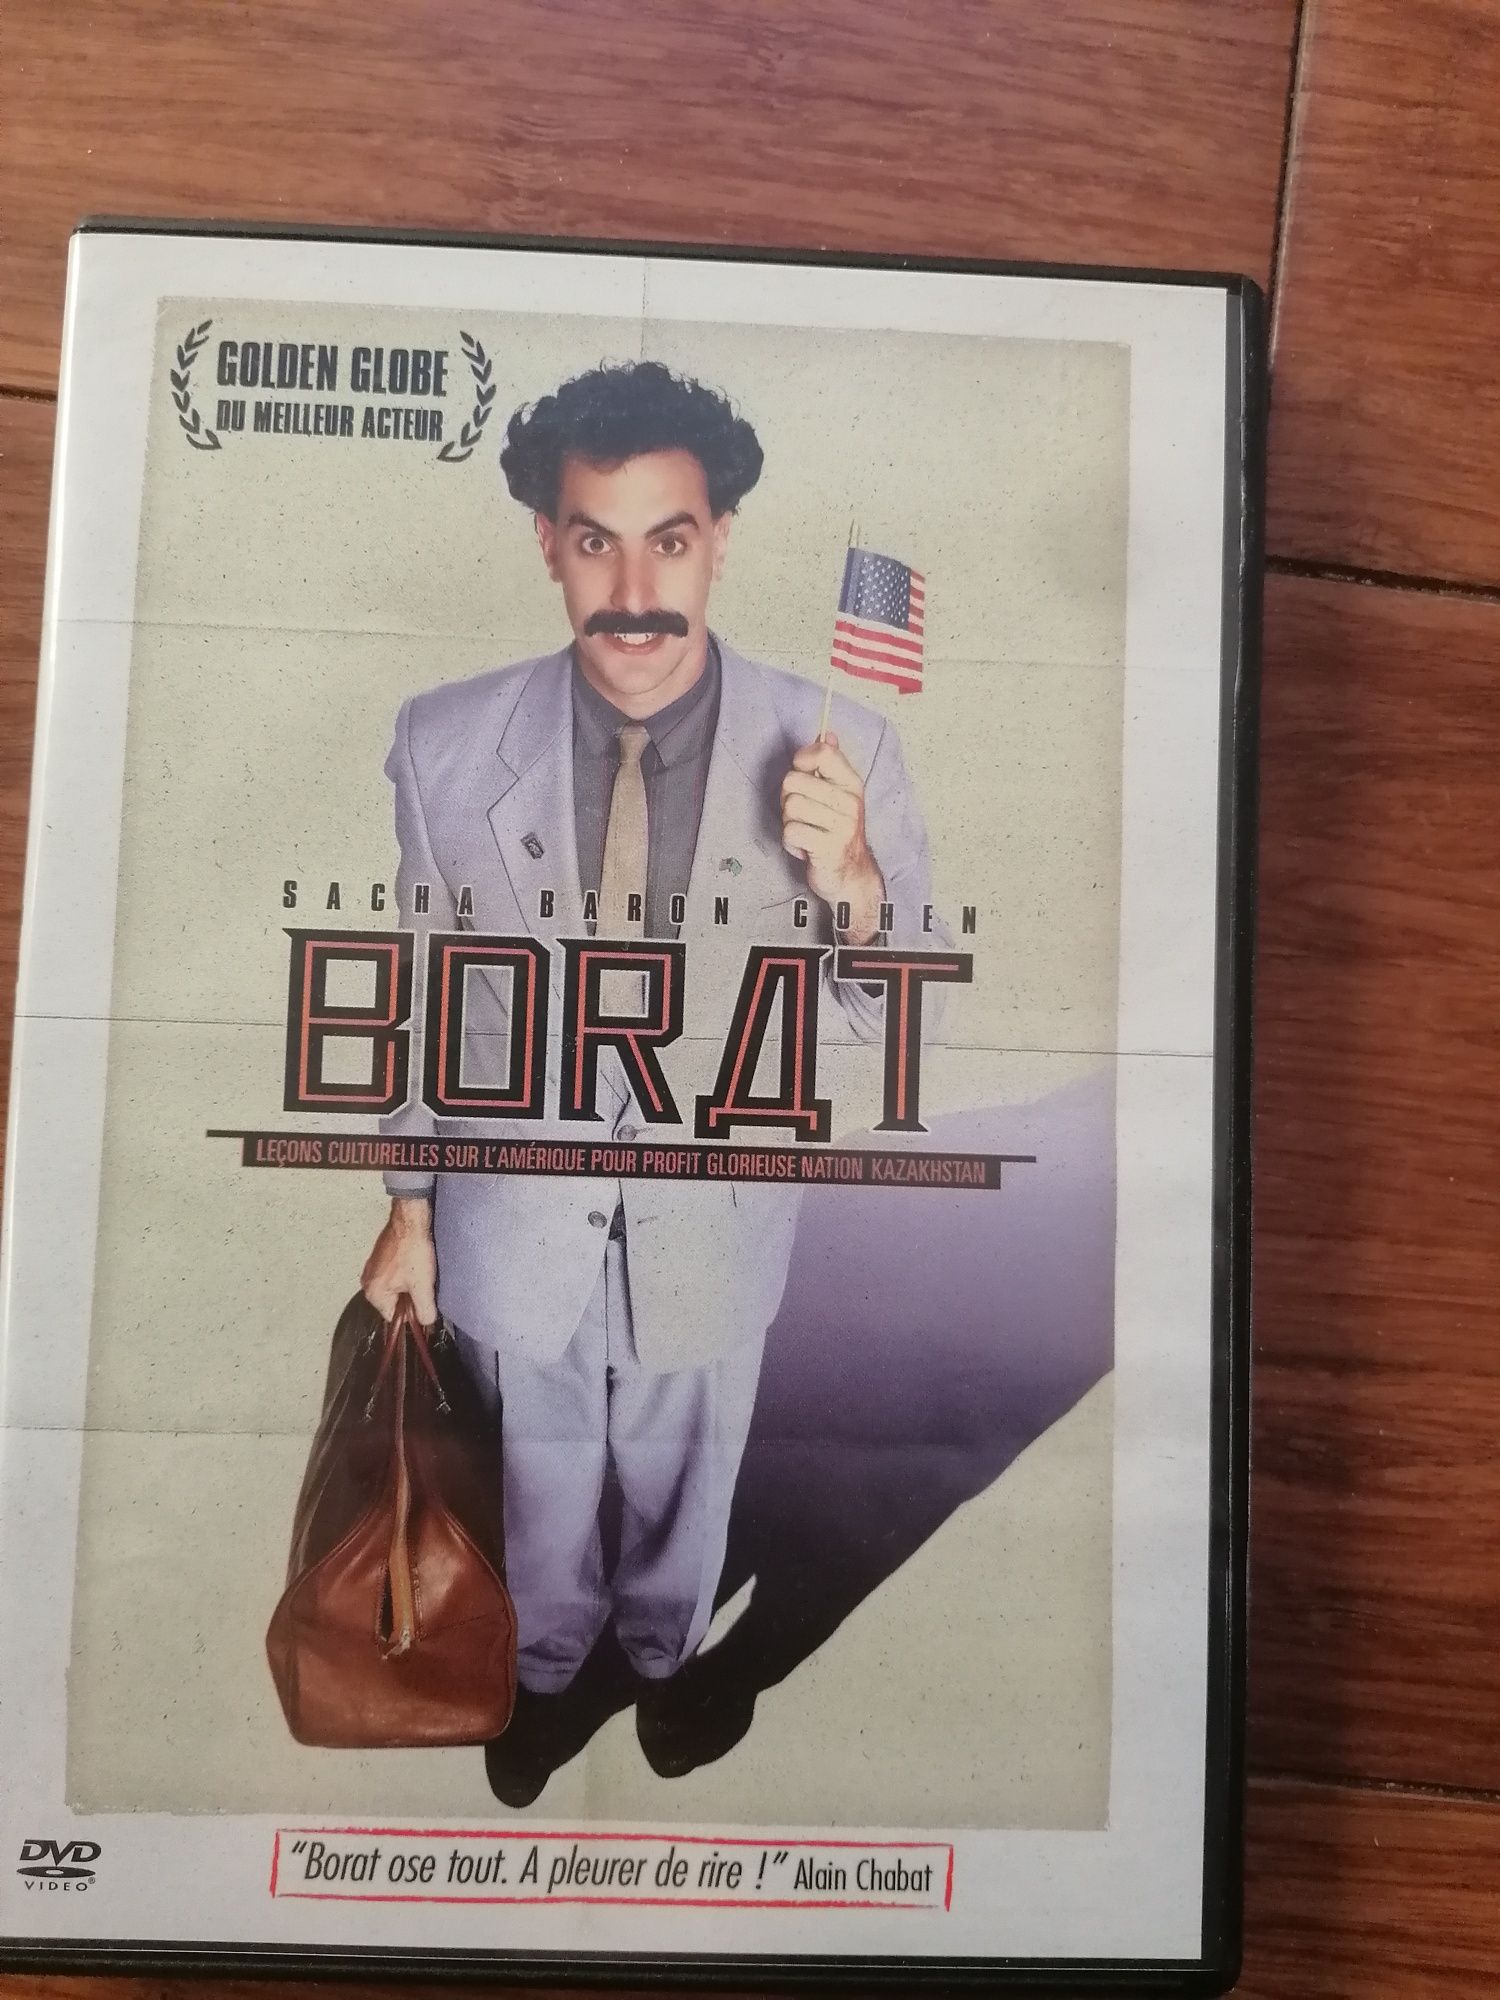 Borat, j. angielski, francuski